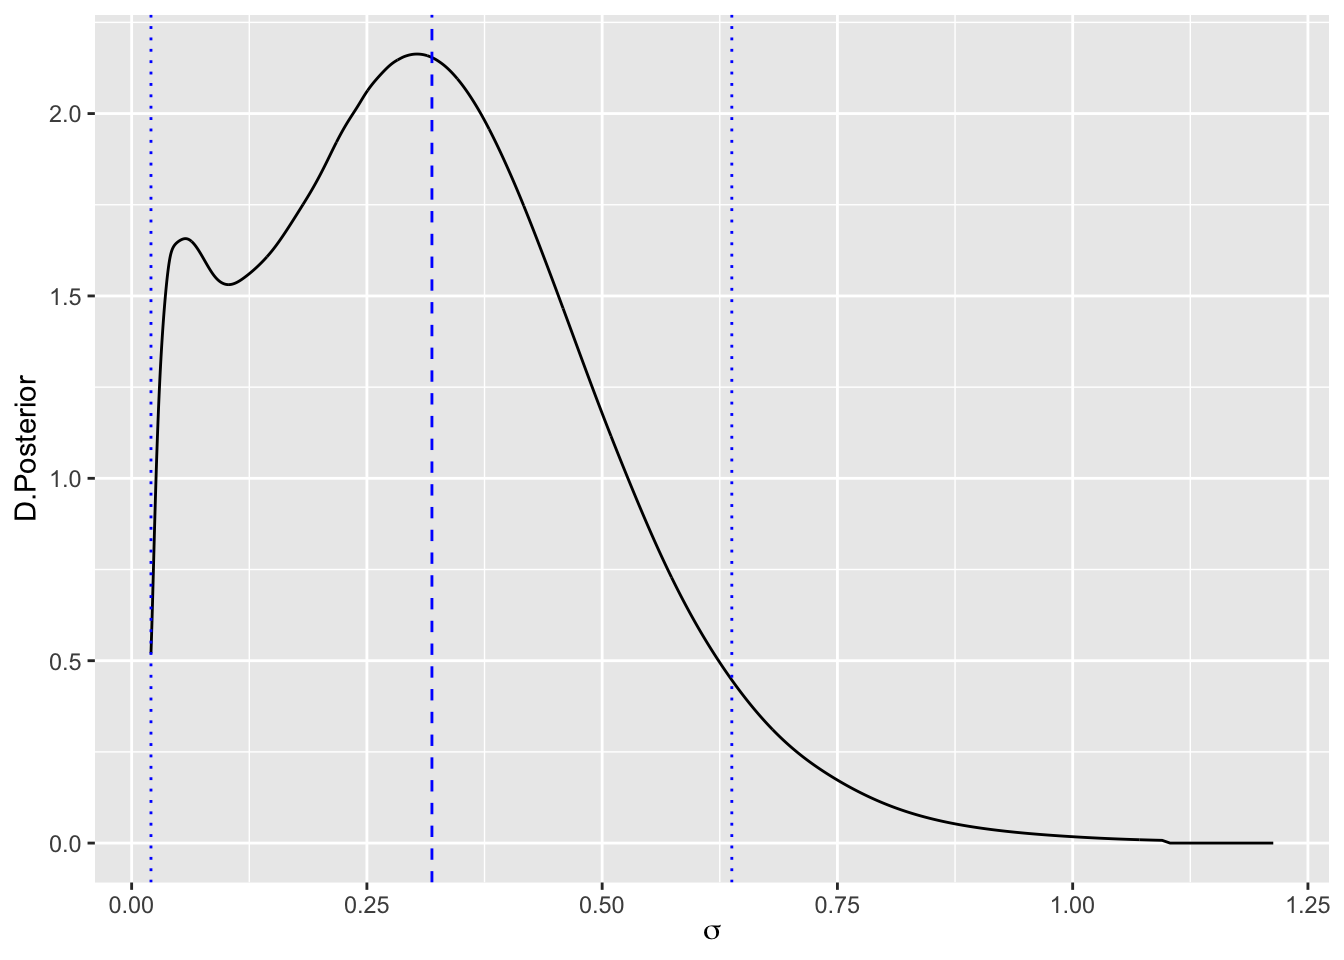 Distribución posterior, media y RC, de la desviación típica de los efectos aleatorios